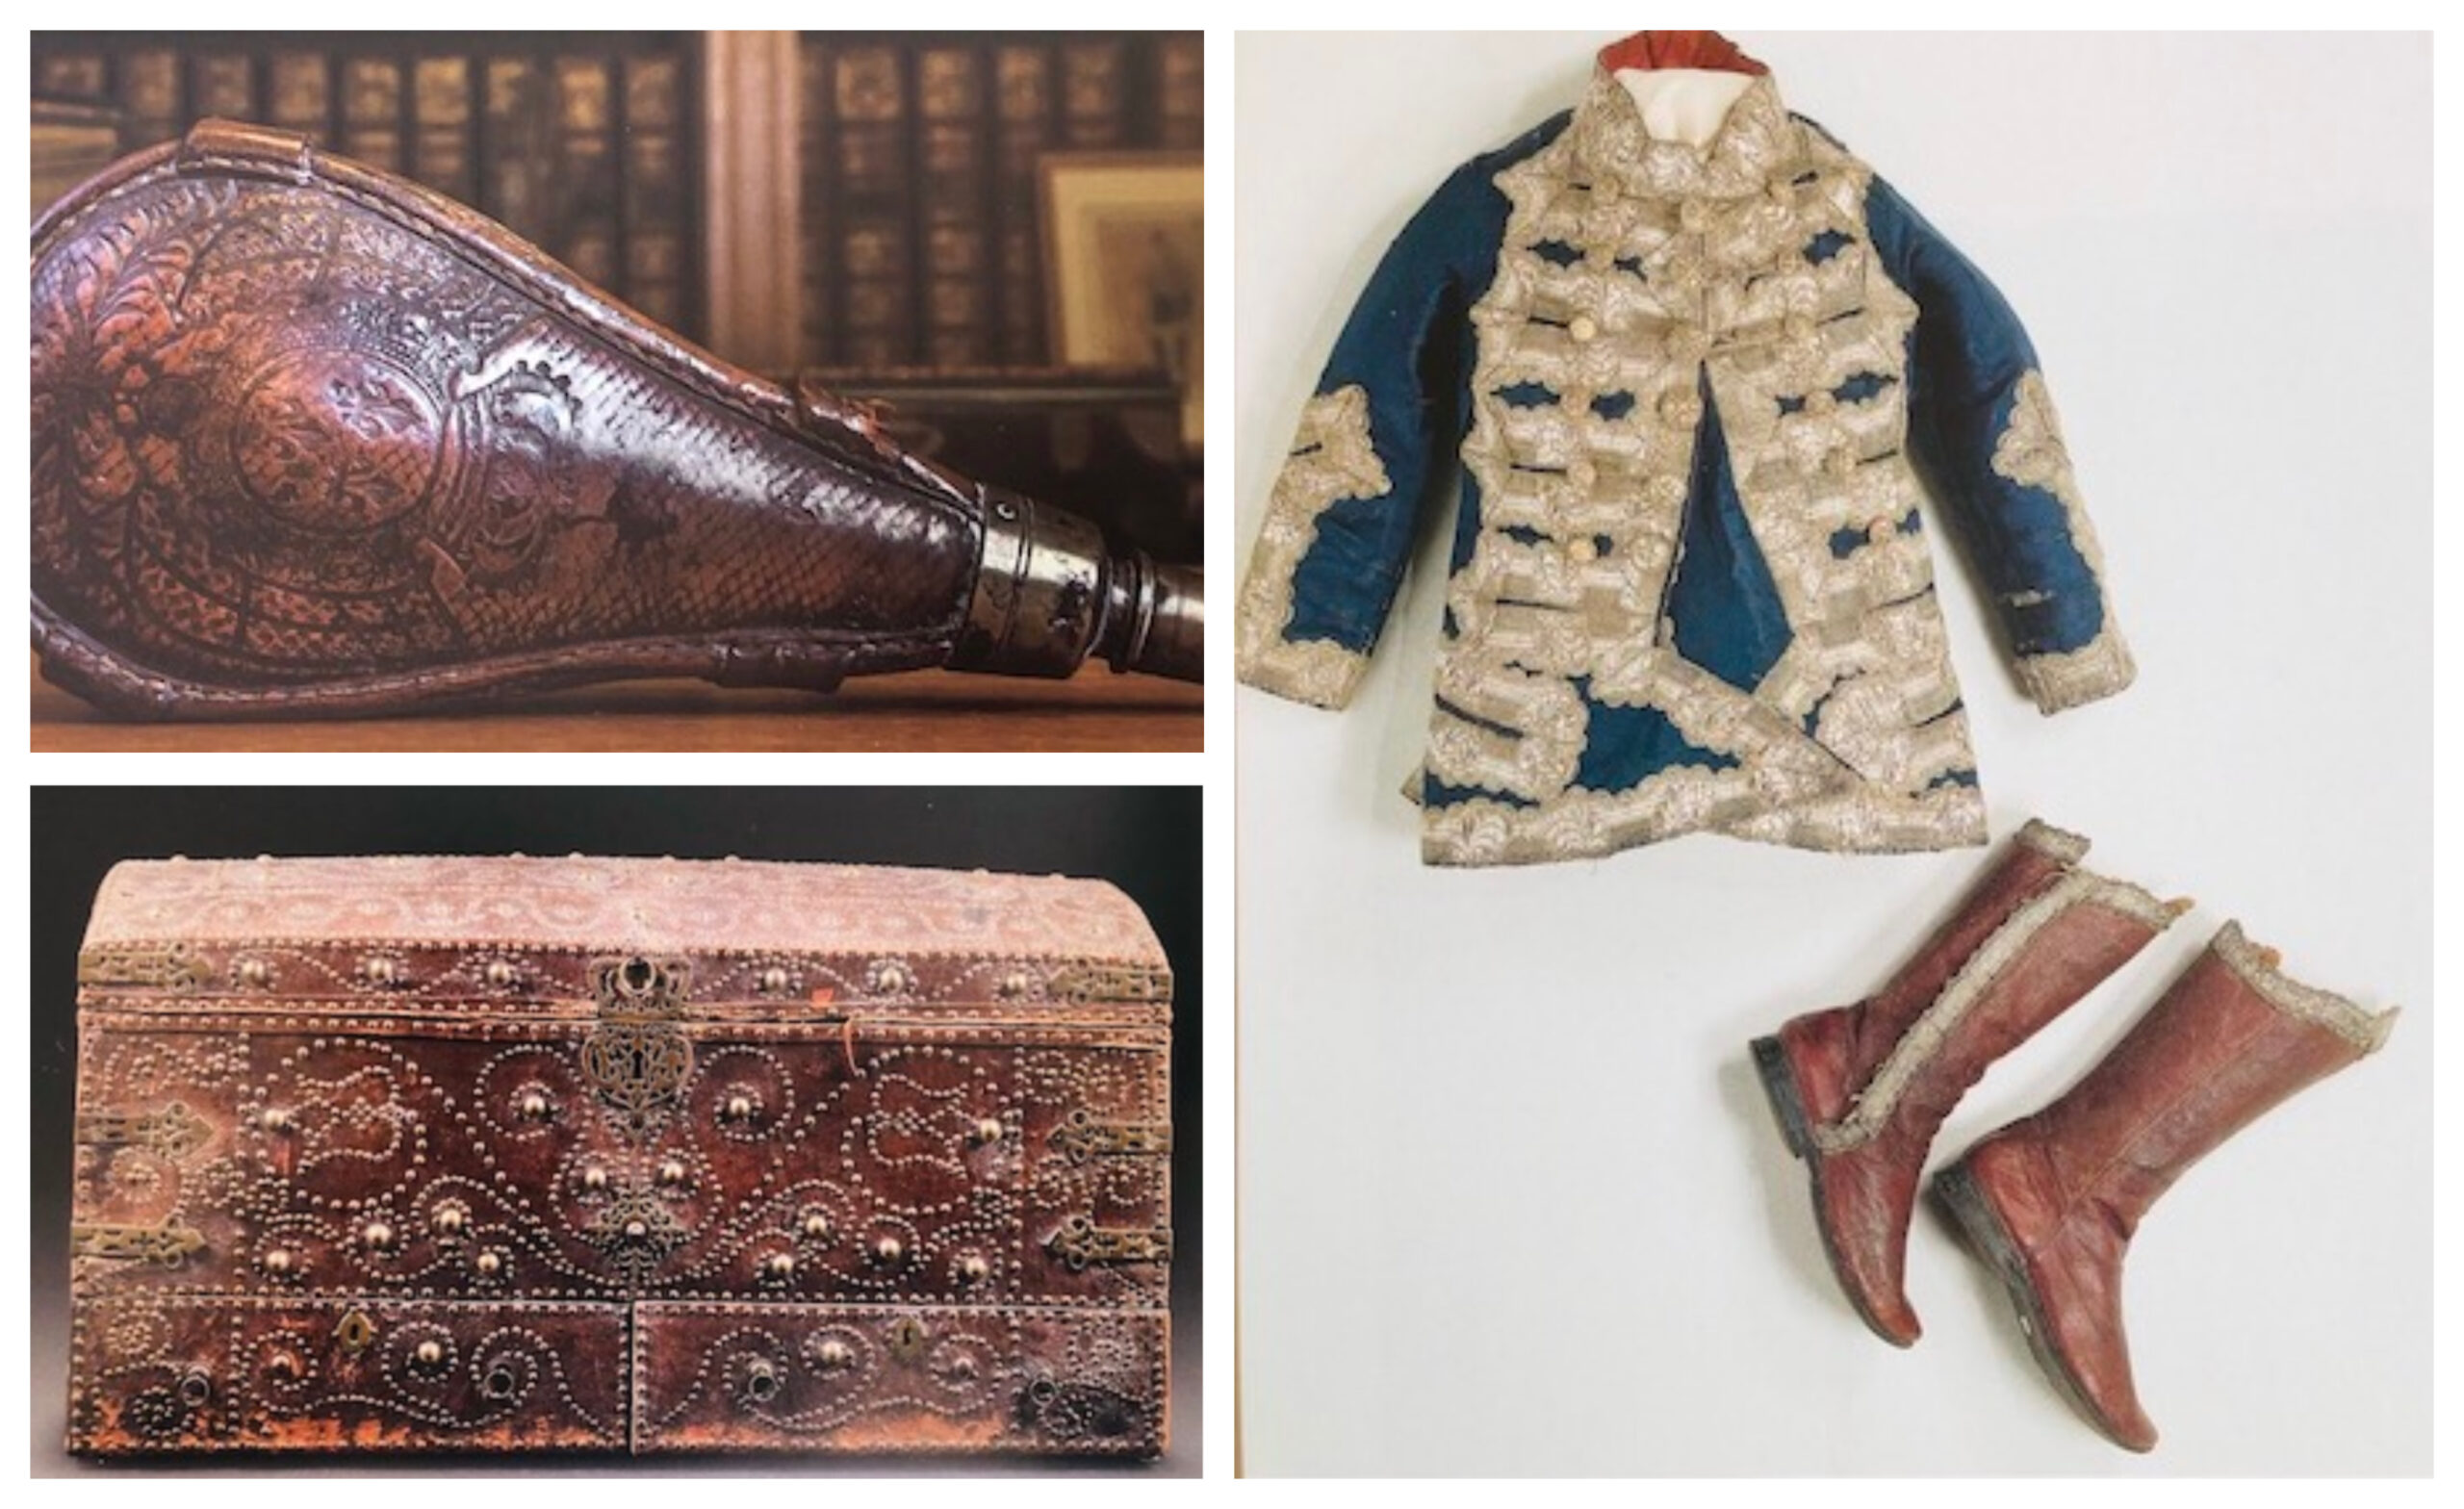 (En haut à gauche) Poire à poudre supposée être en cuir de Russie, période Louis XIII. (En bas à gauche) Coffre en cuir de Russie, XVIème siècle. (À droite) Bottes en cuir de Russie de Guillaume V d'Orange-Nassau. (Source : Mémoire du tan)